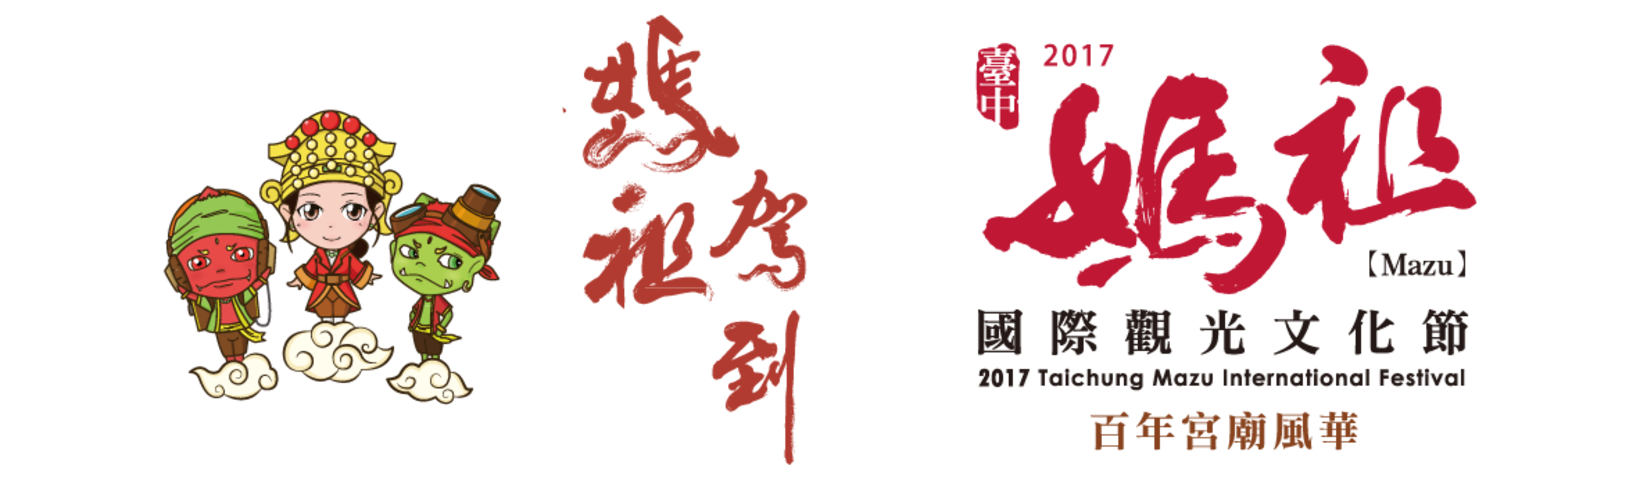 2017臺中媽祖國際觀光文化節